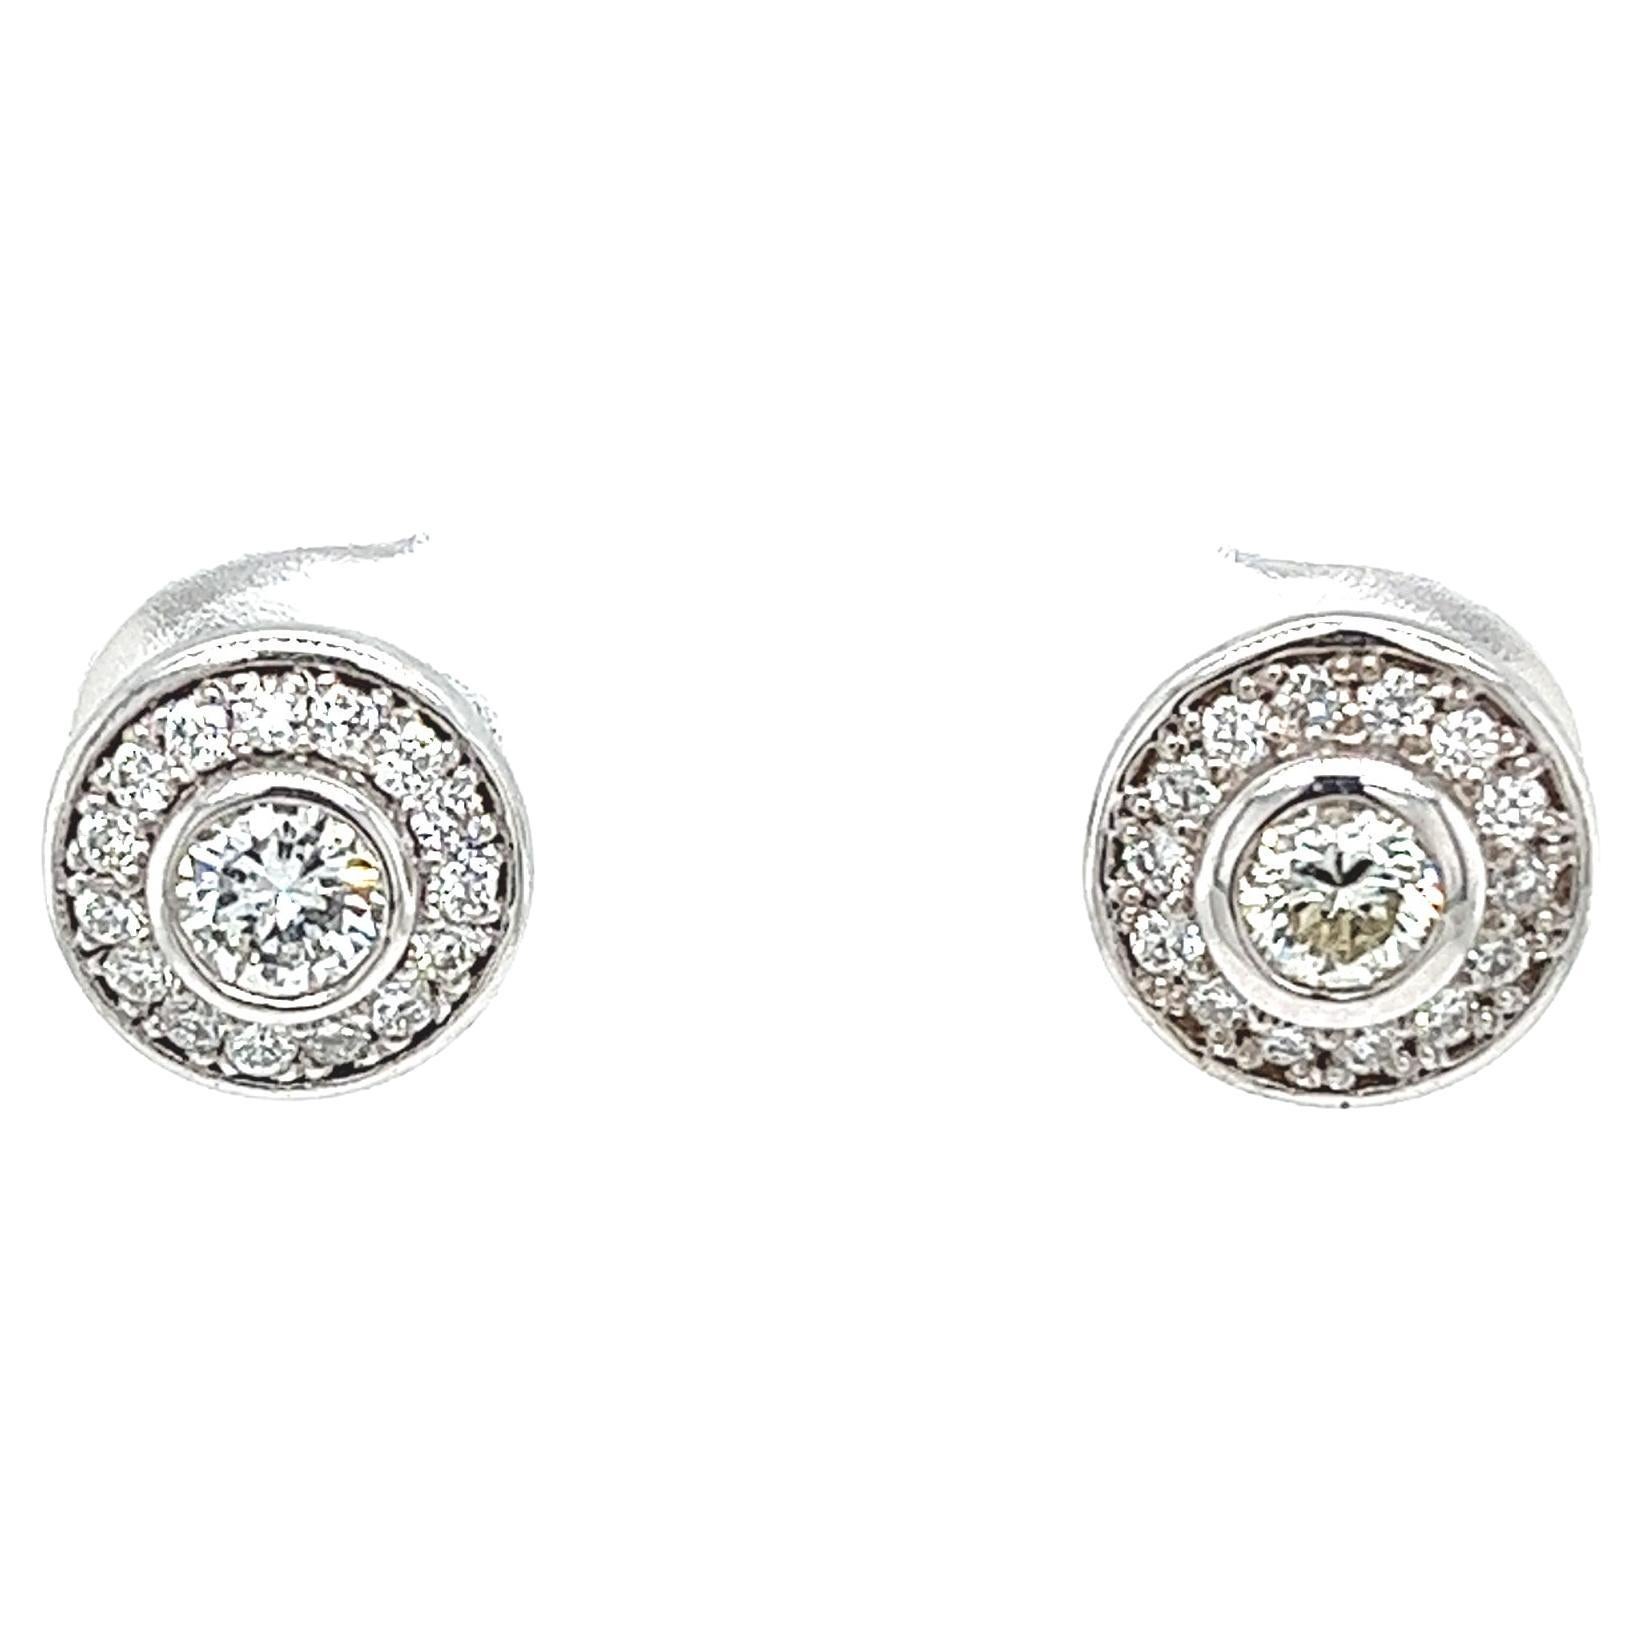 0,55 Karat runder Diamant-Halo-Ohrringe aus 18 Karat Weißgold mit Brillantschliff